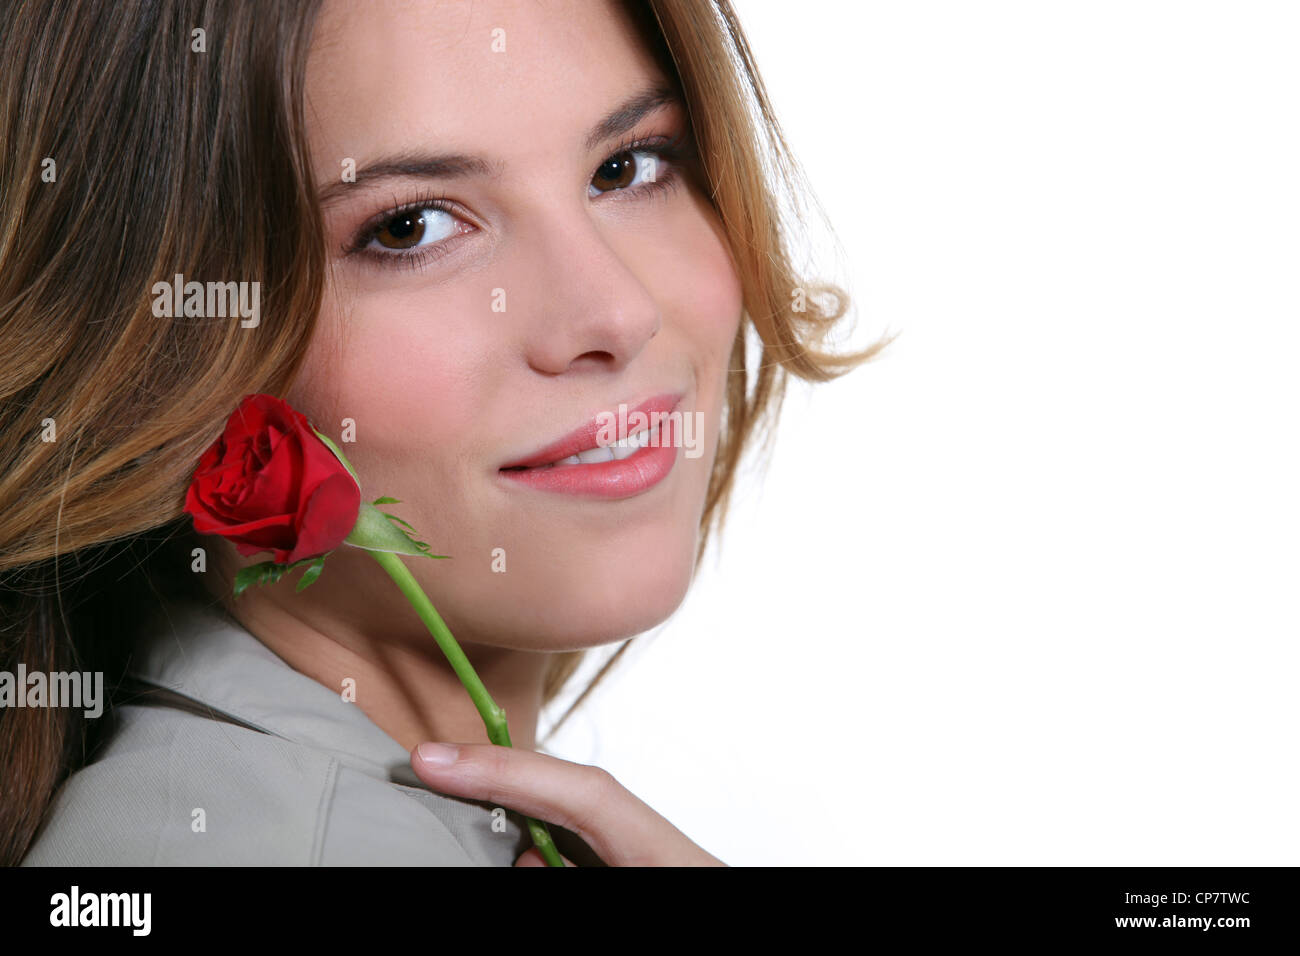 Mädchen mit einer roten rose Stockfoto